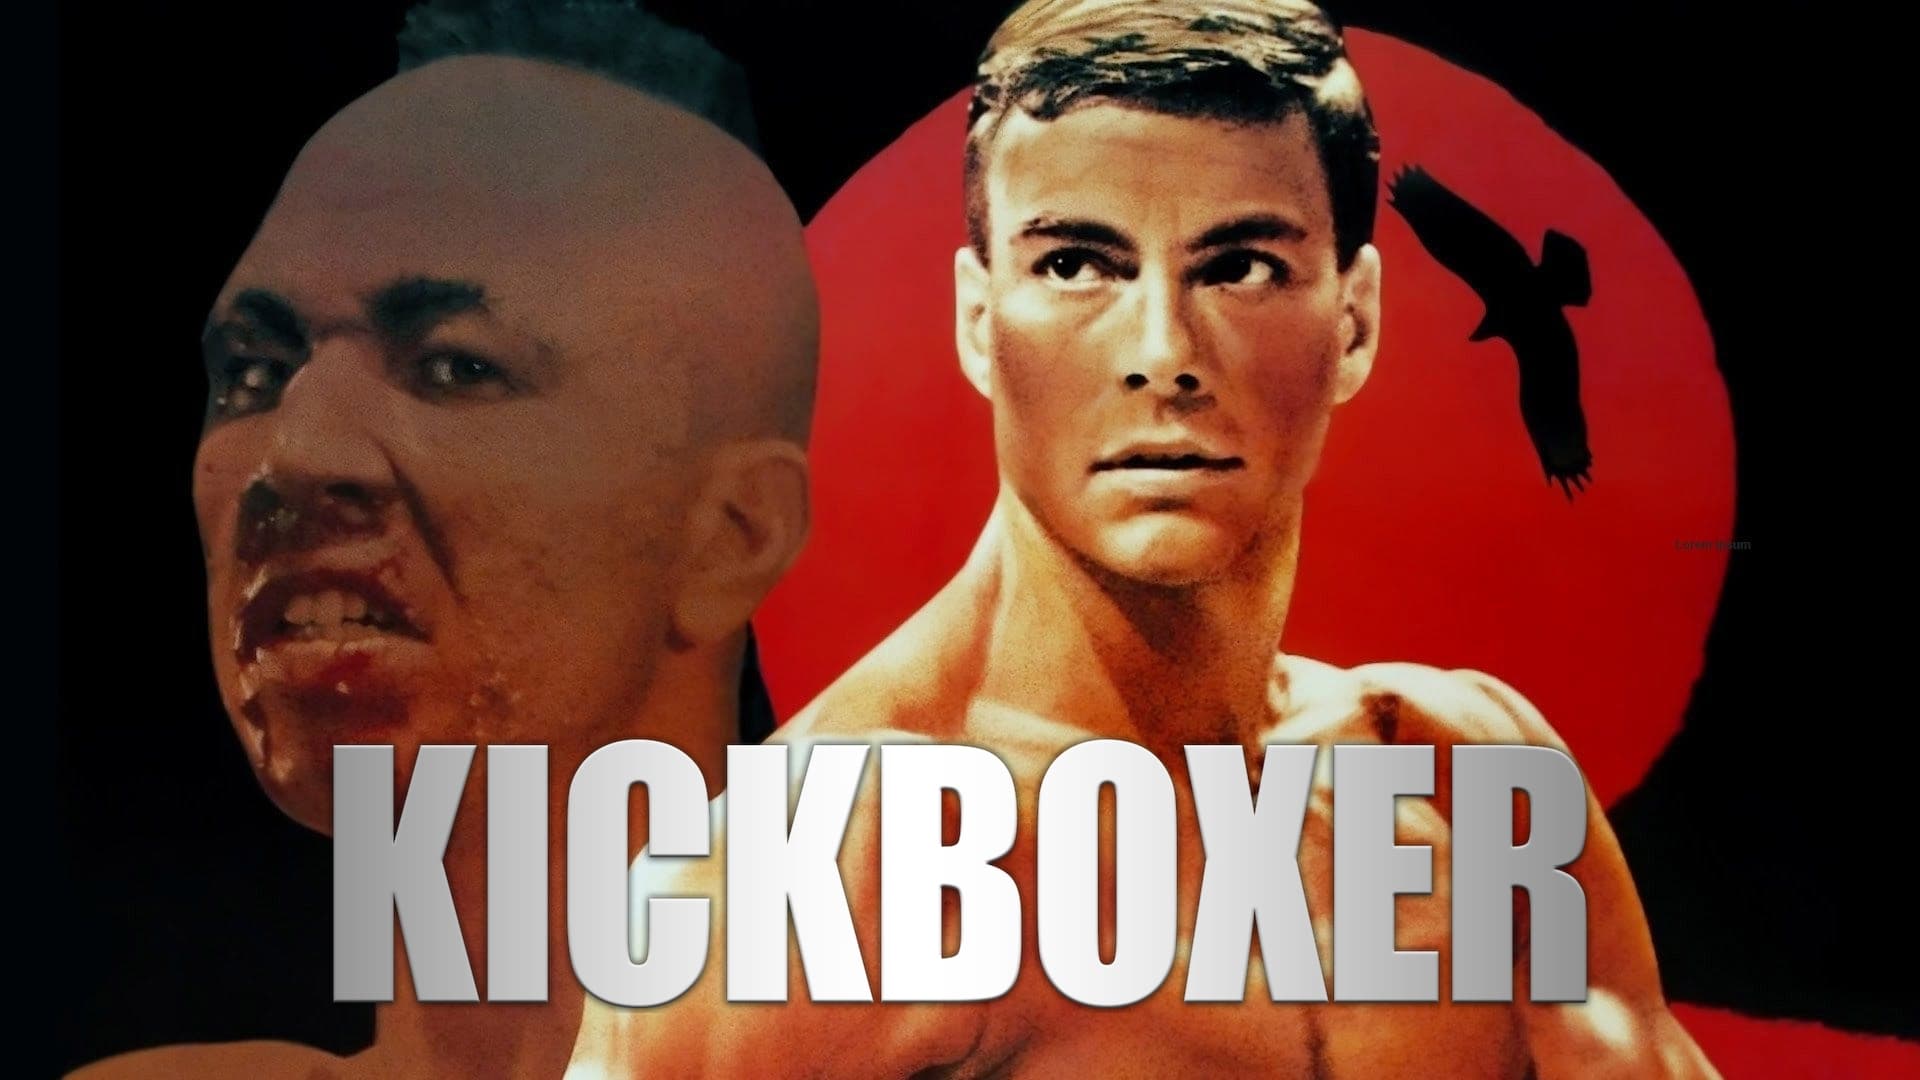 Kickboxer - Il nuovo guerriero